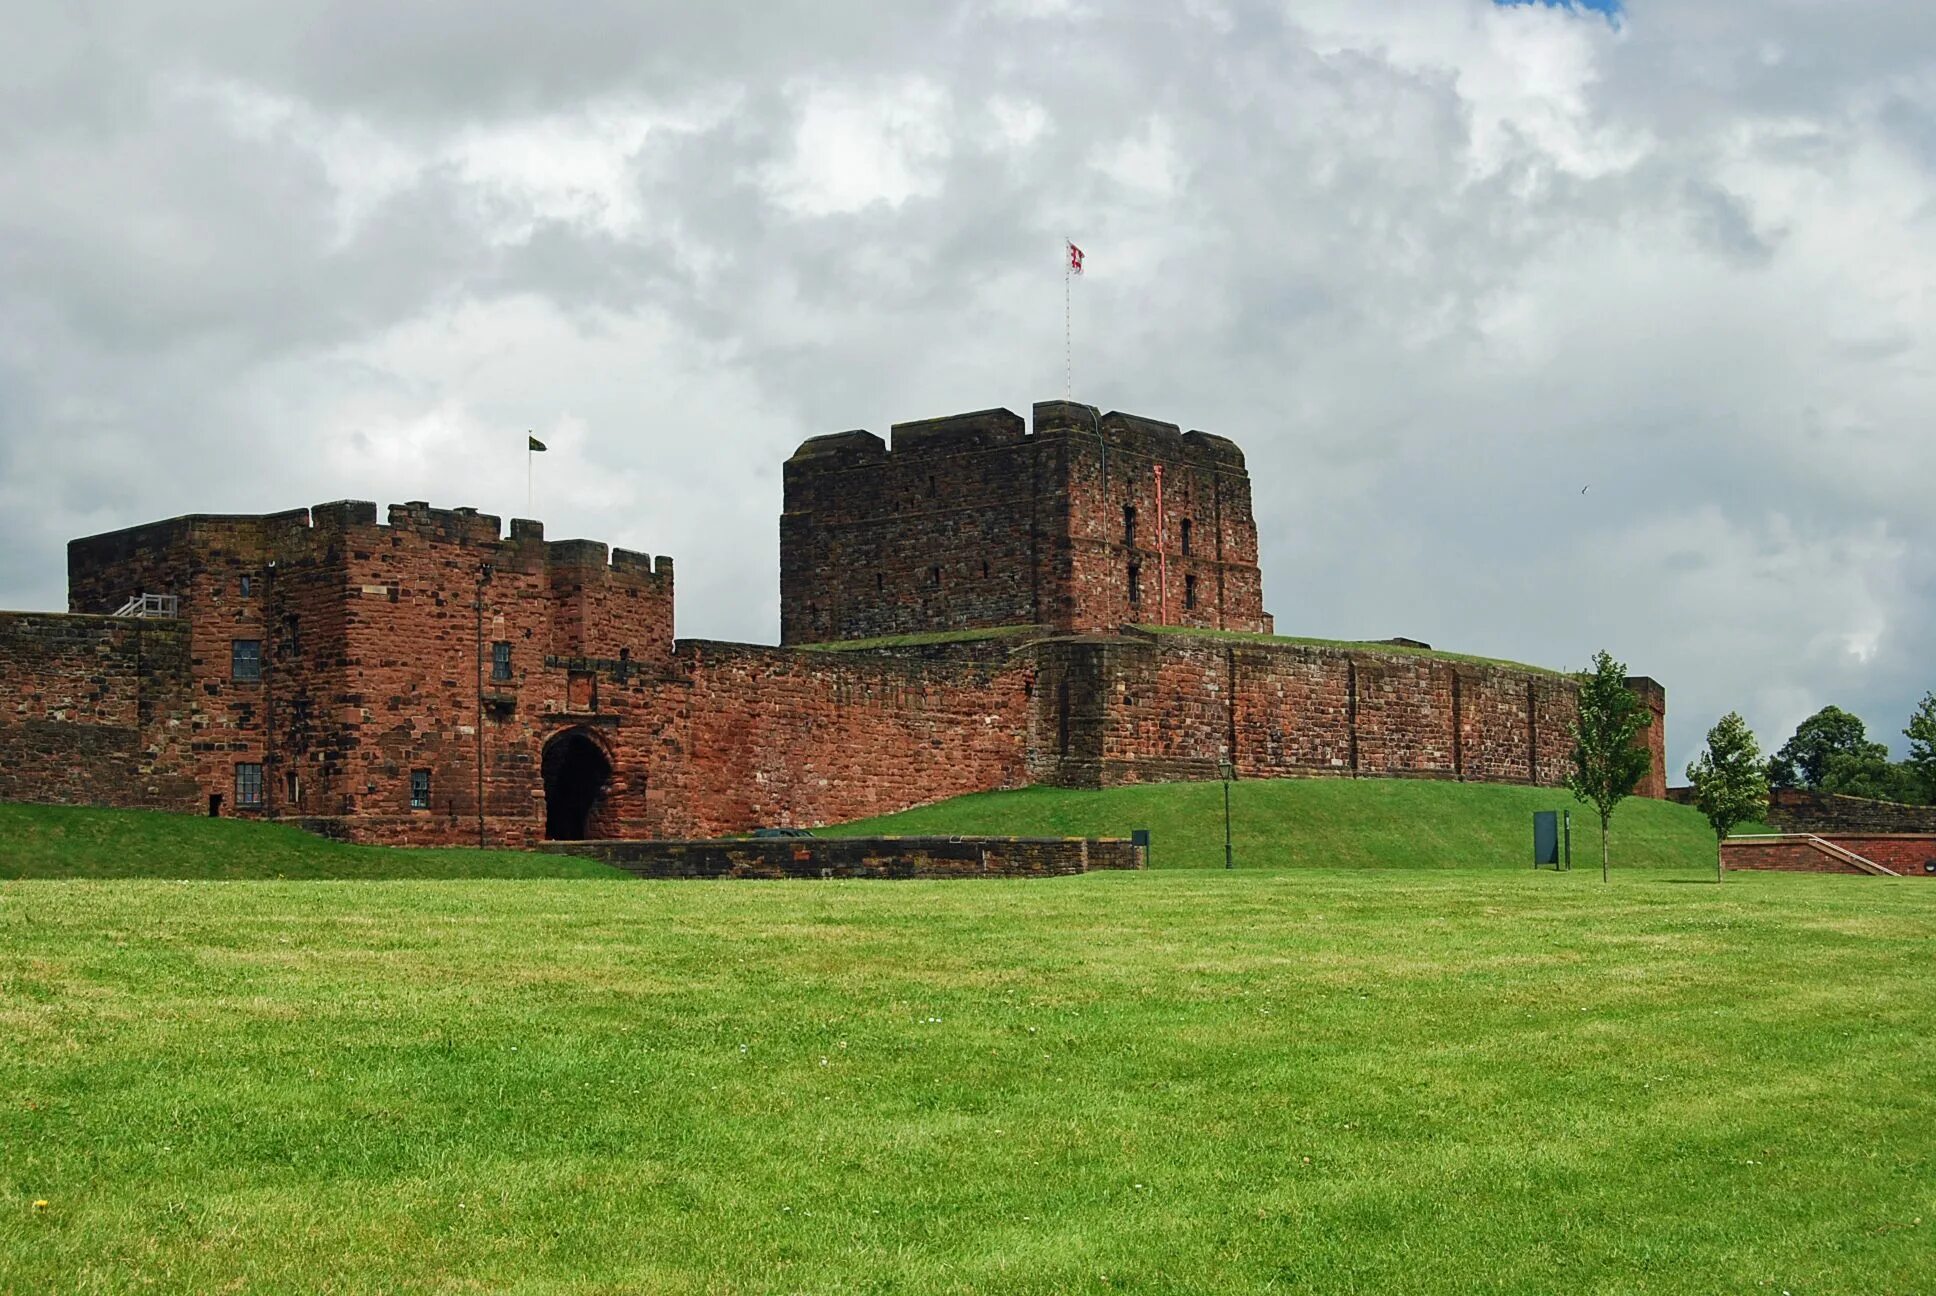 Замок Карлайл в Англии. Carlisle замок. Карлайл Карлайл, графство Камбрия, Англия. Замок Кумберланд. Самая крупная крепость из сохранившихся и действующих